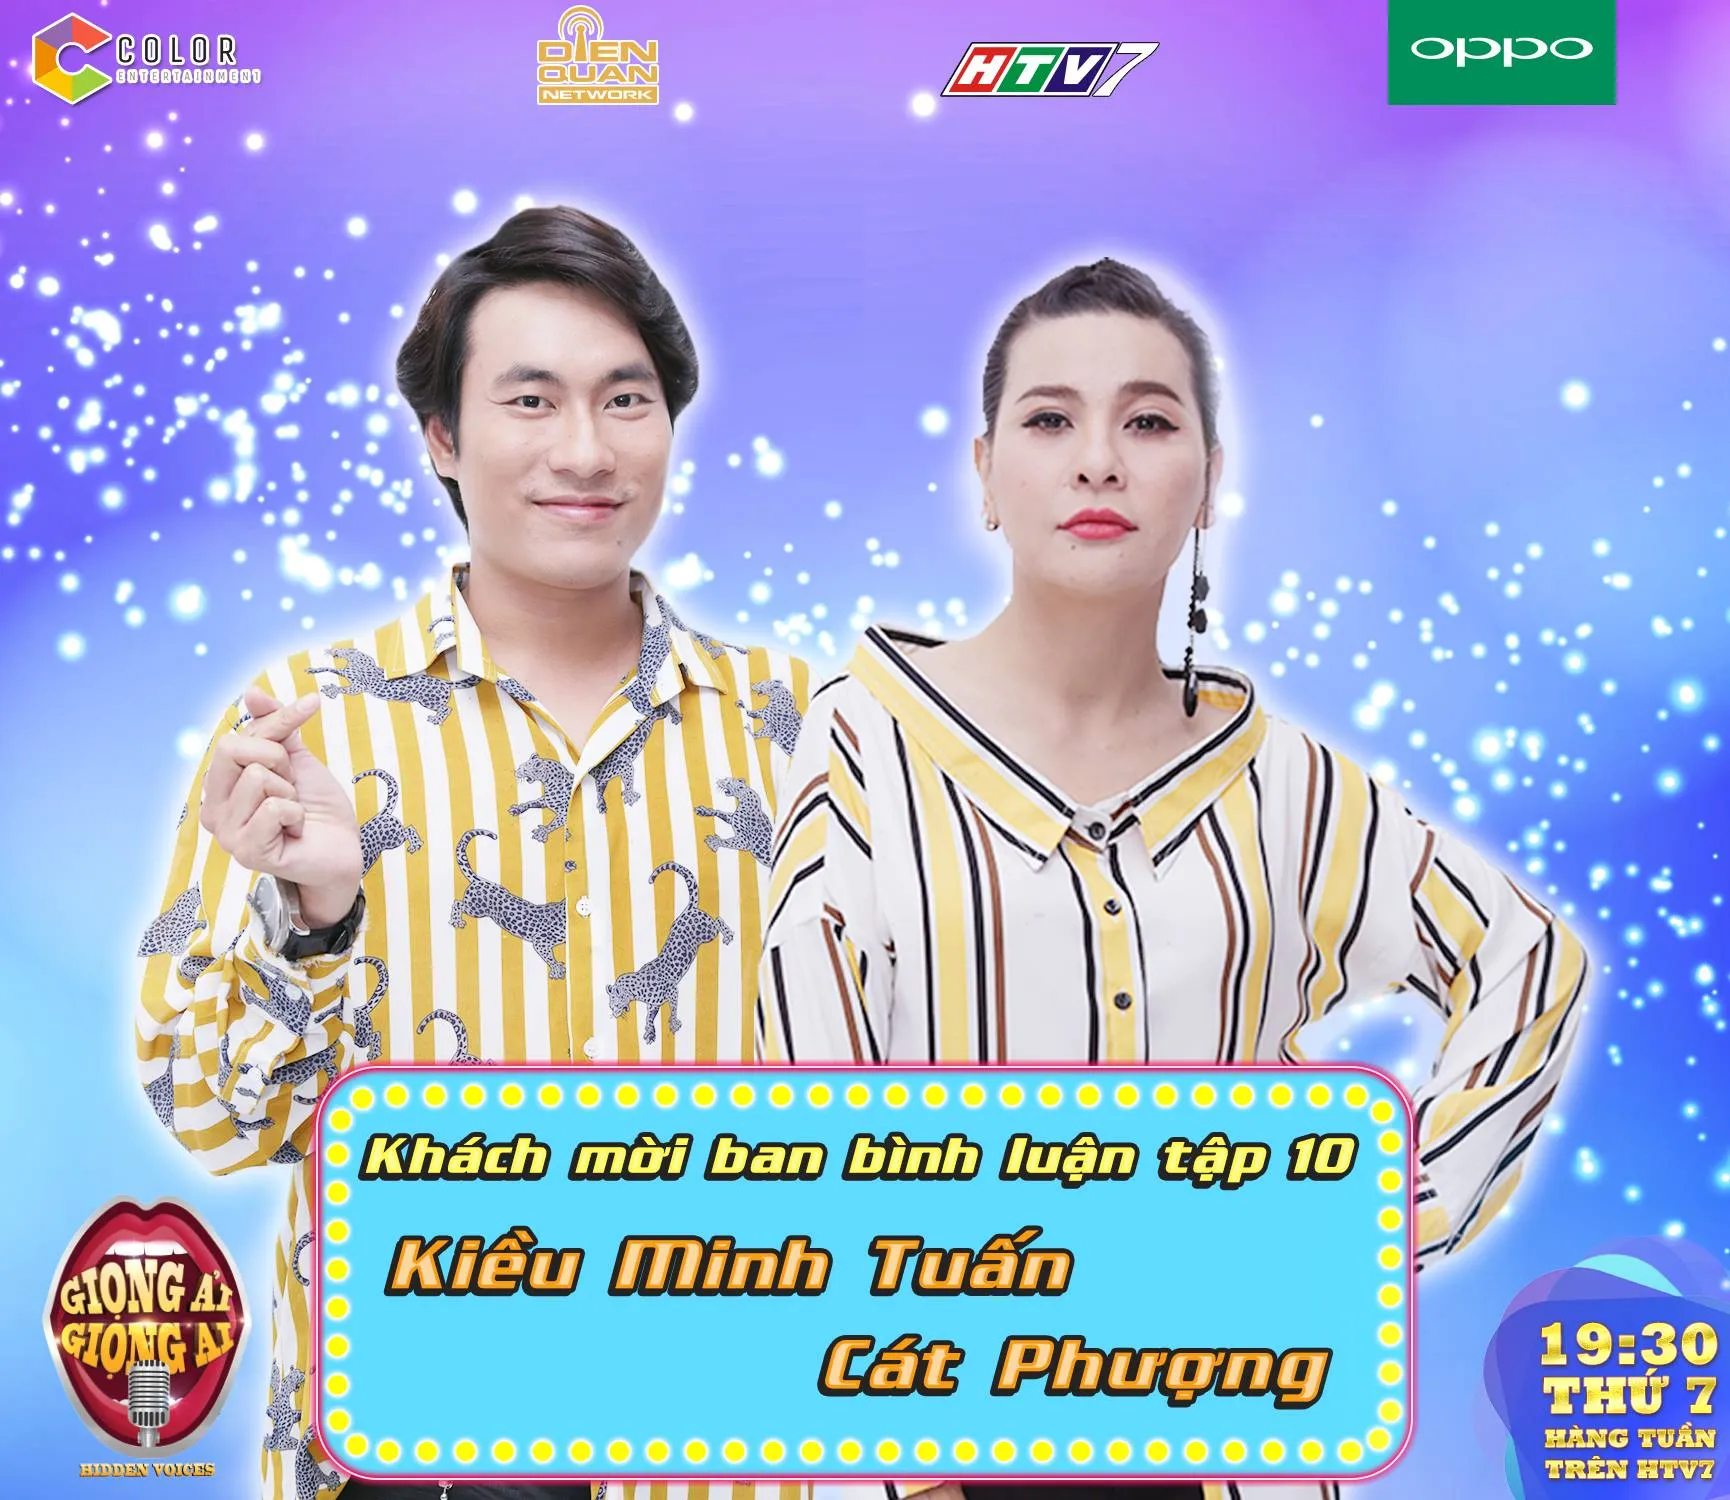 VOH-Cat-Phuong-Kieu-Minh-Tuan-1